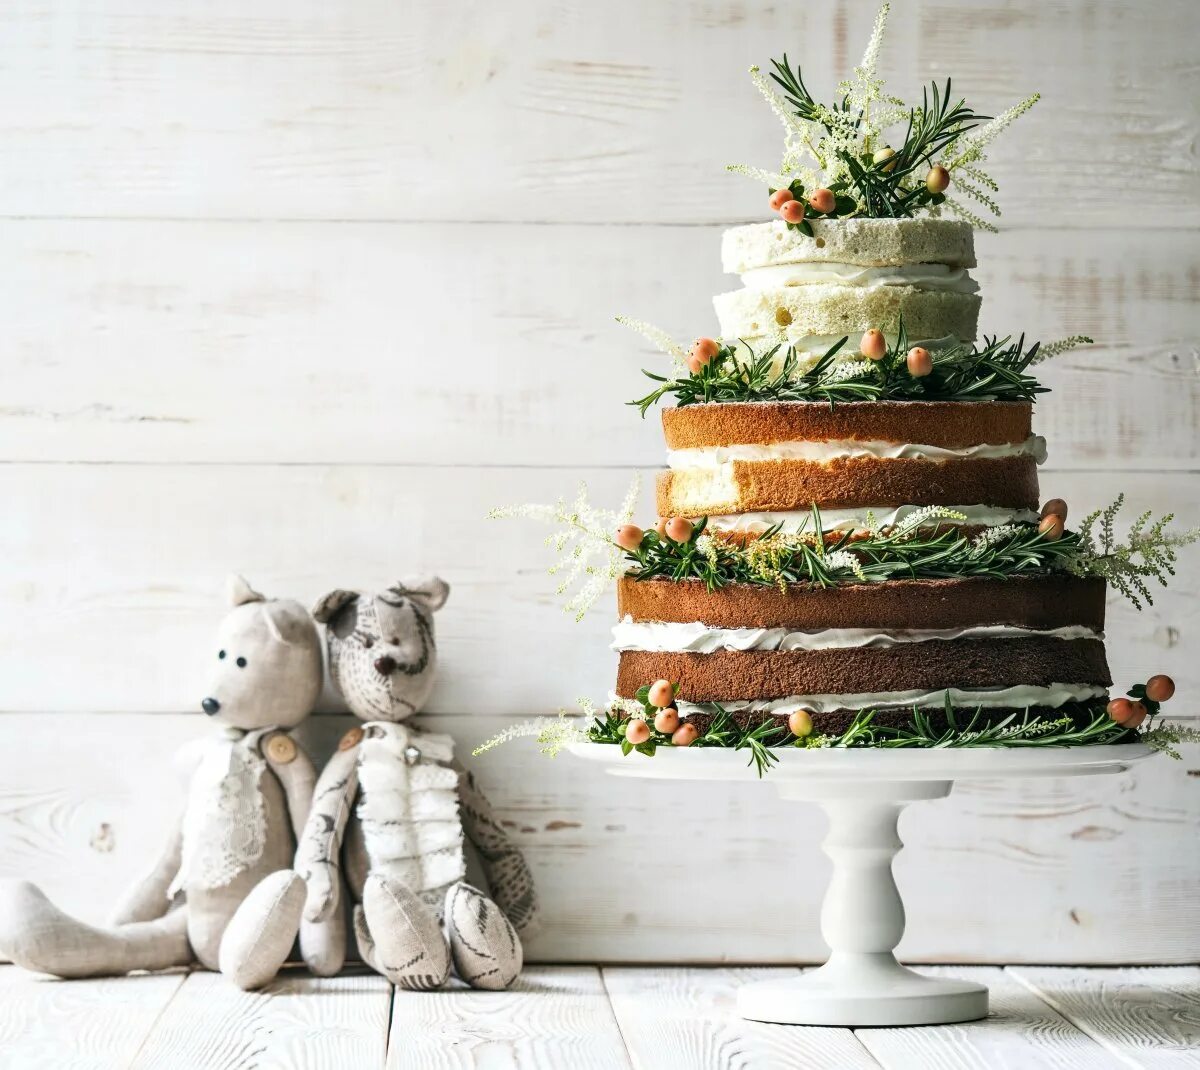 Свадебный торт!. Свадебный торт с открытыми коржами. Свадебный торт в стиле рустик двухъярусный. Торт в эко стиле.